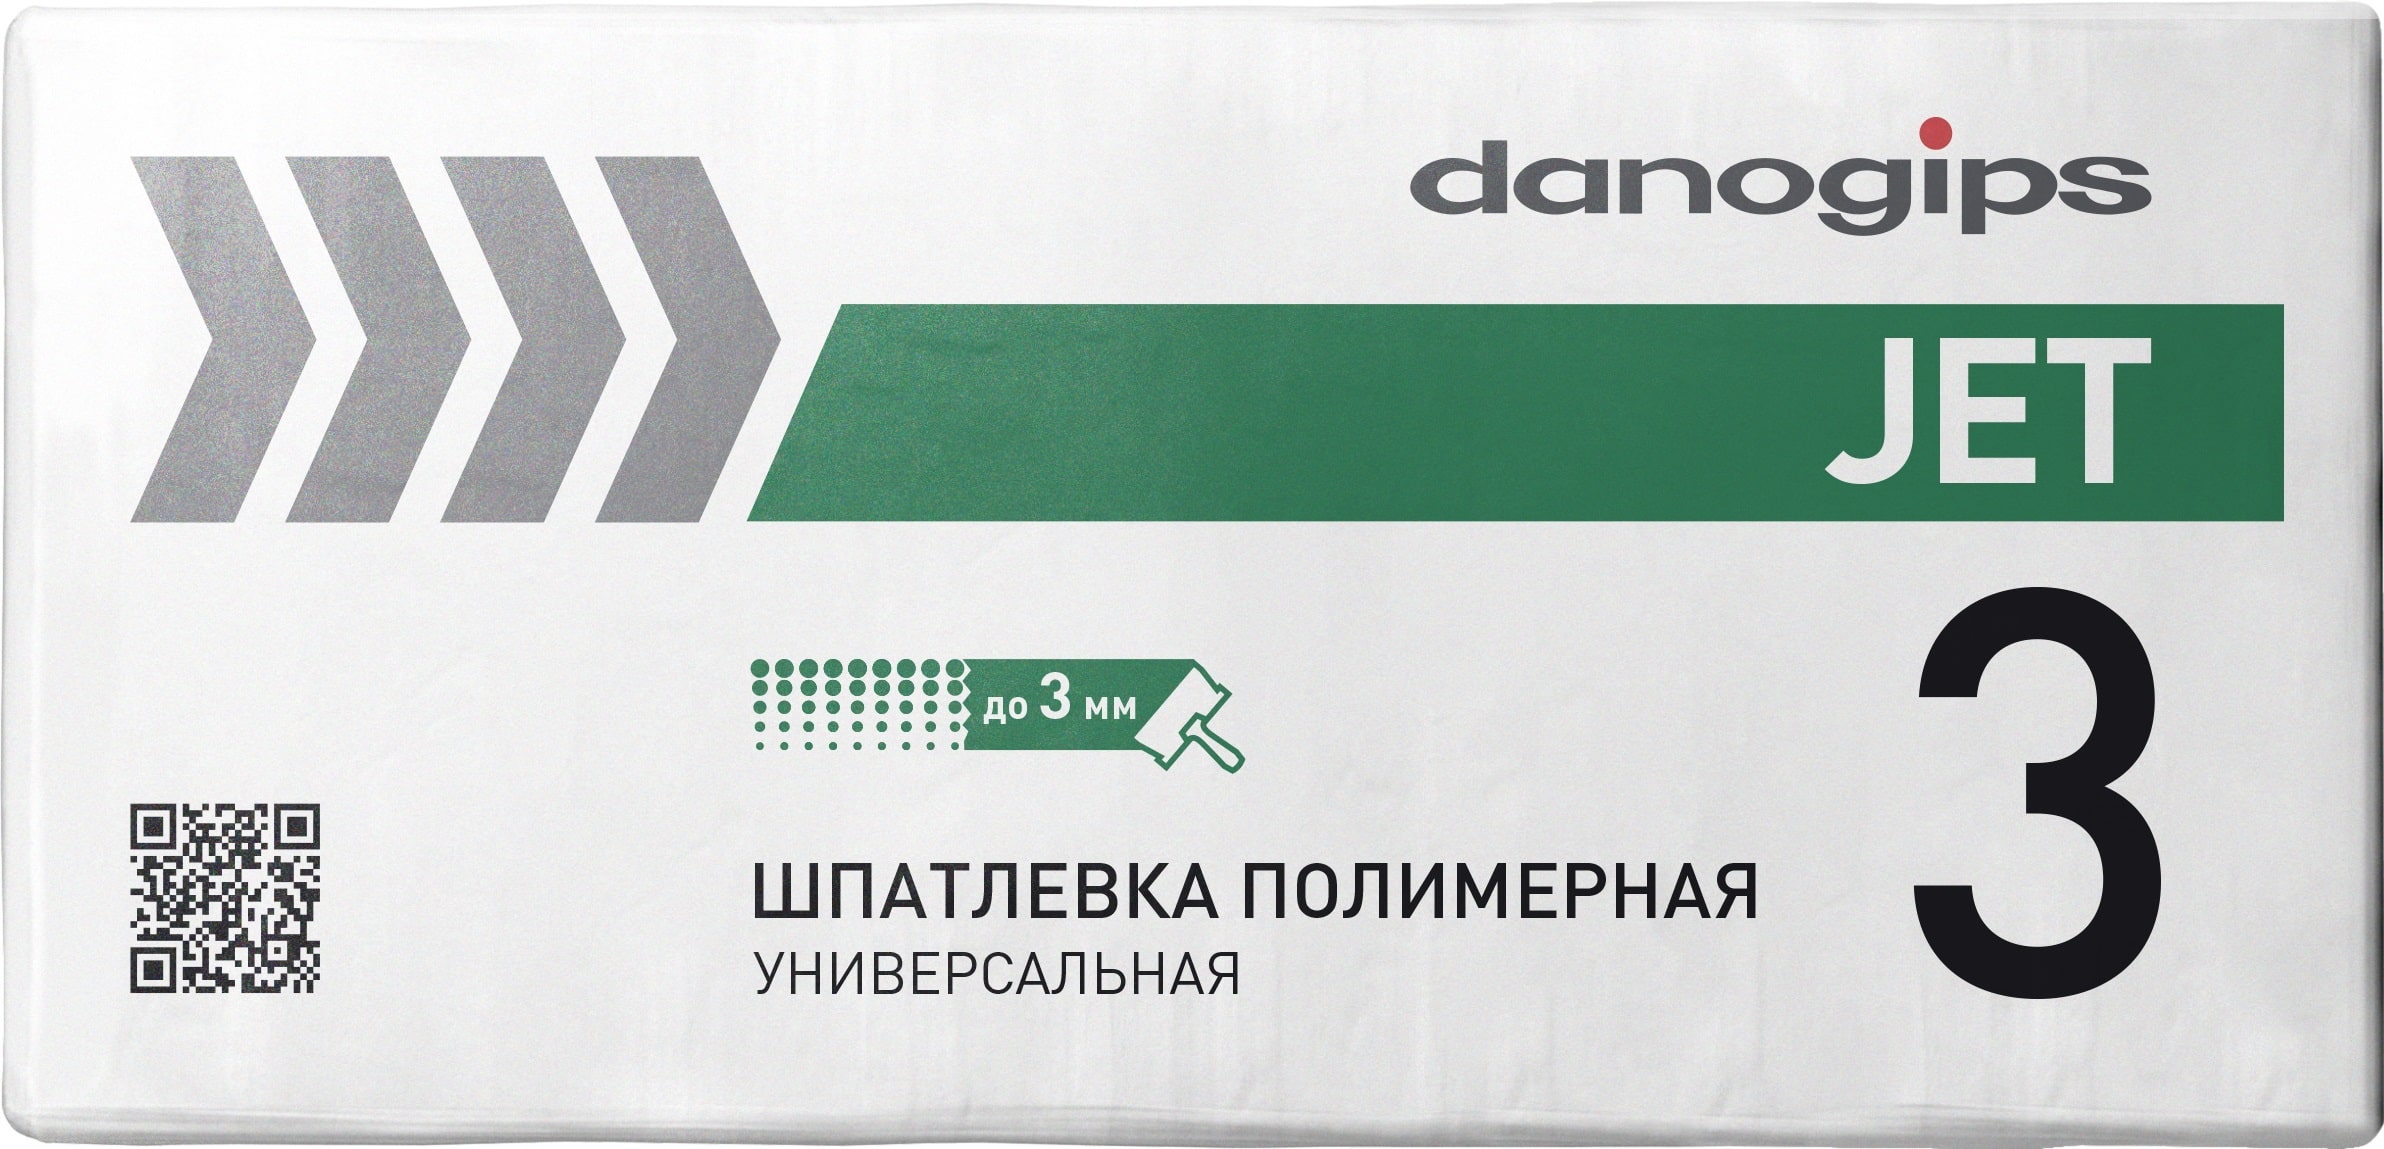 Шпатлевка полимерная универсальная Danogips JET 3 20 кг